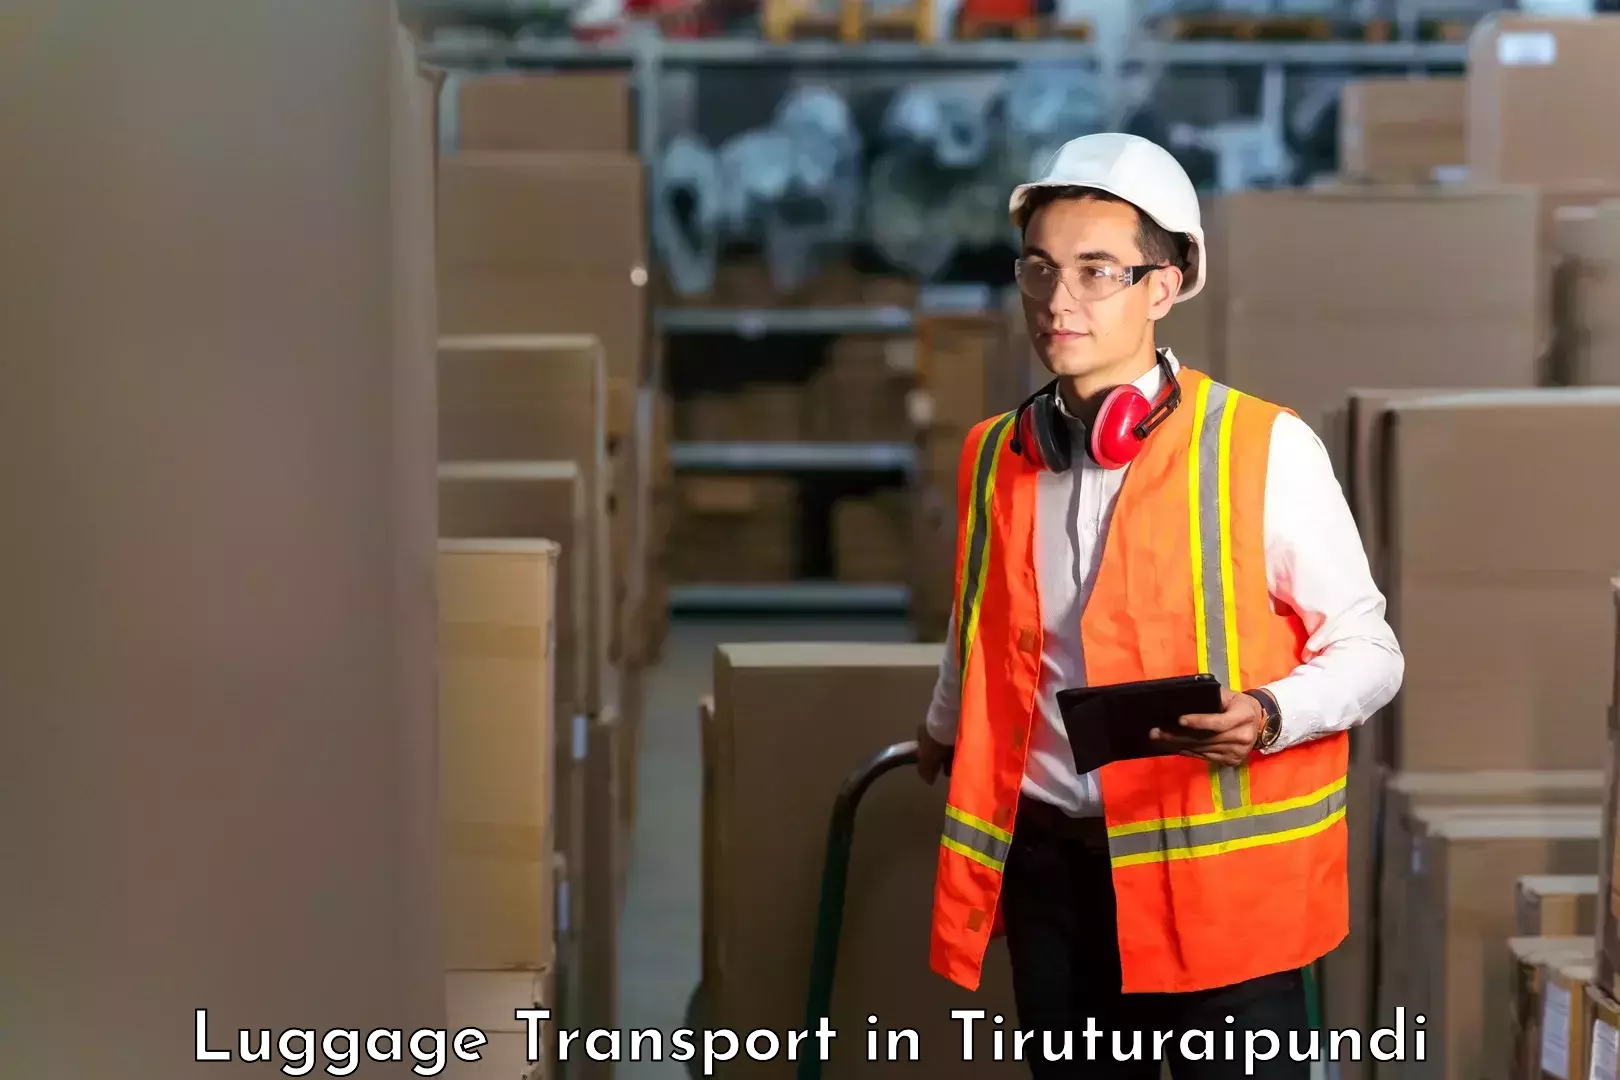 Luggage shipping efficiency in Tiruturaipundi